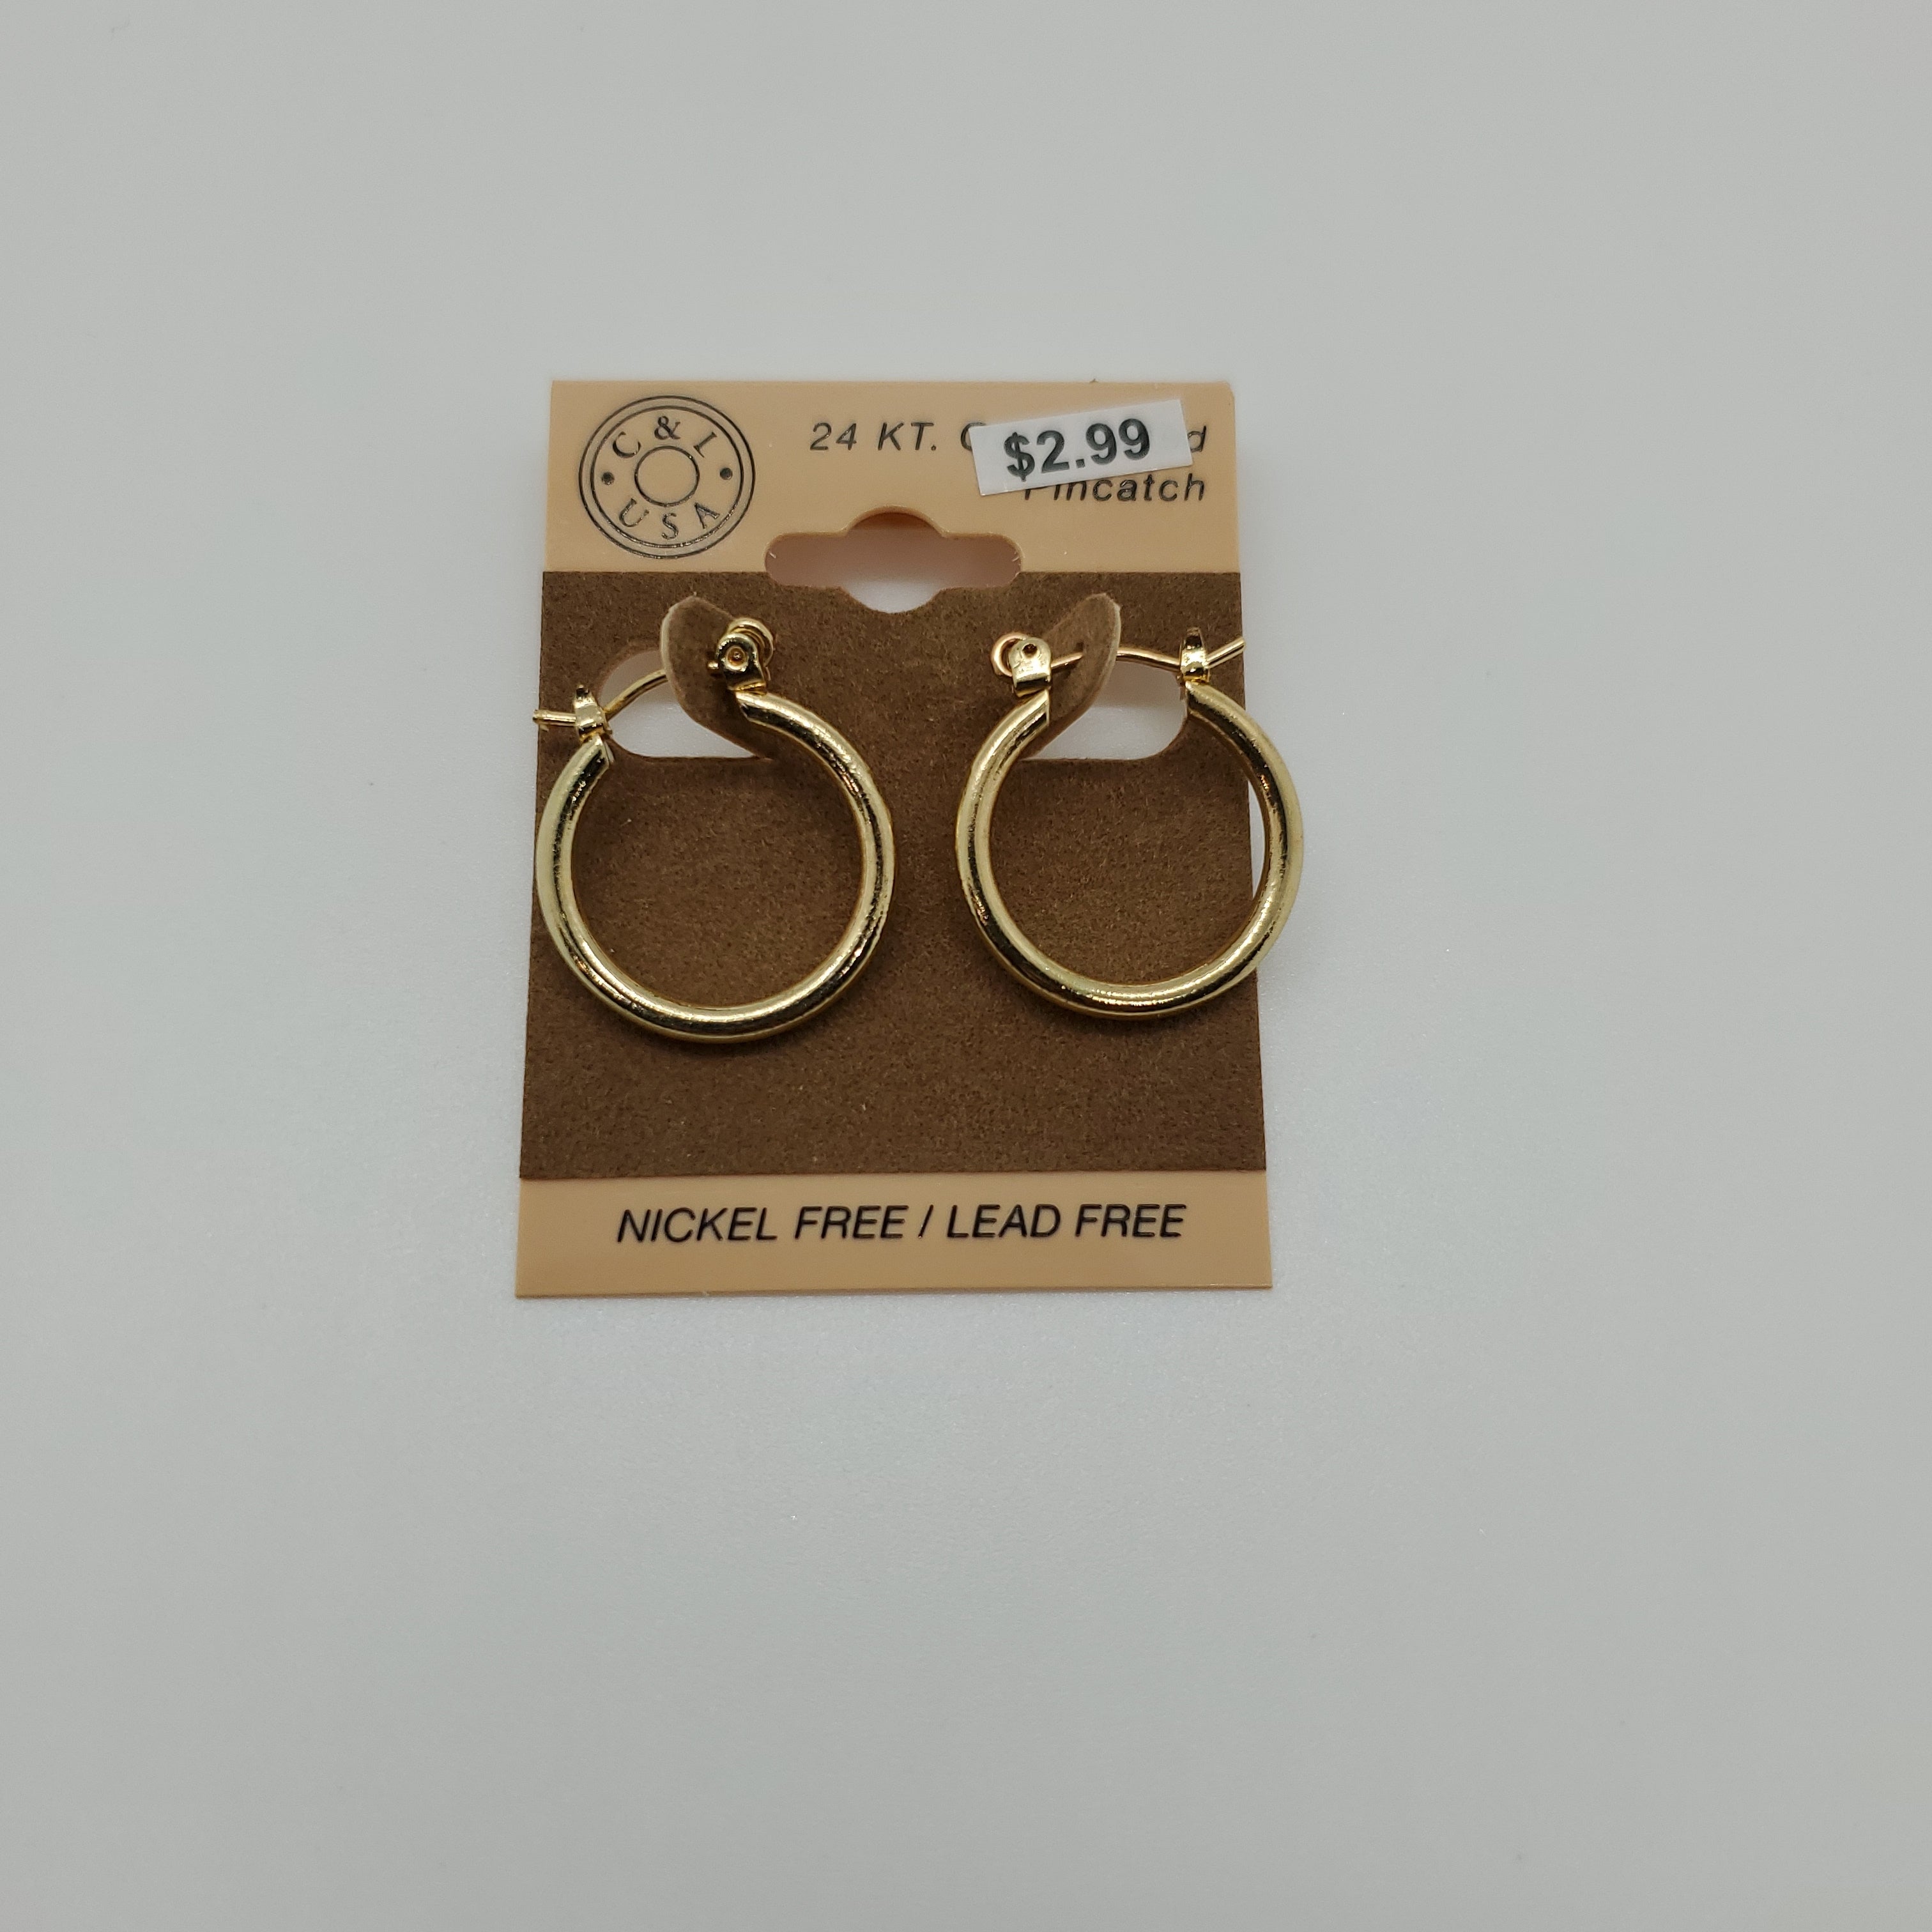 24KT Gold Plated Pincatch Hoop Earrings NPK103 - Beauty Bar & Supply